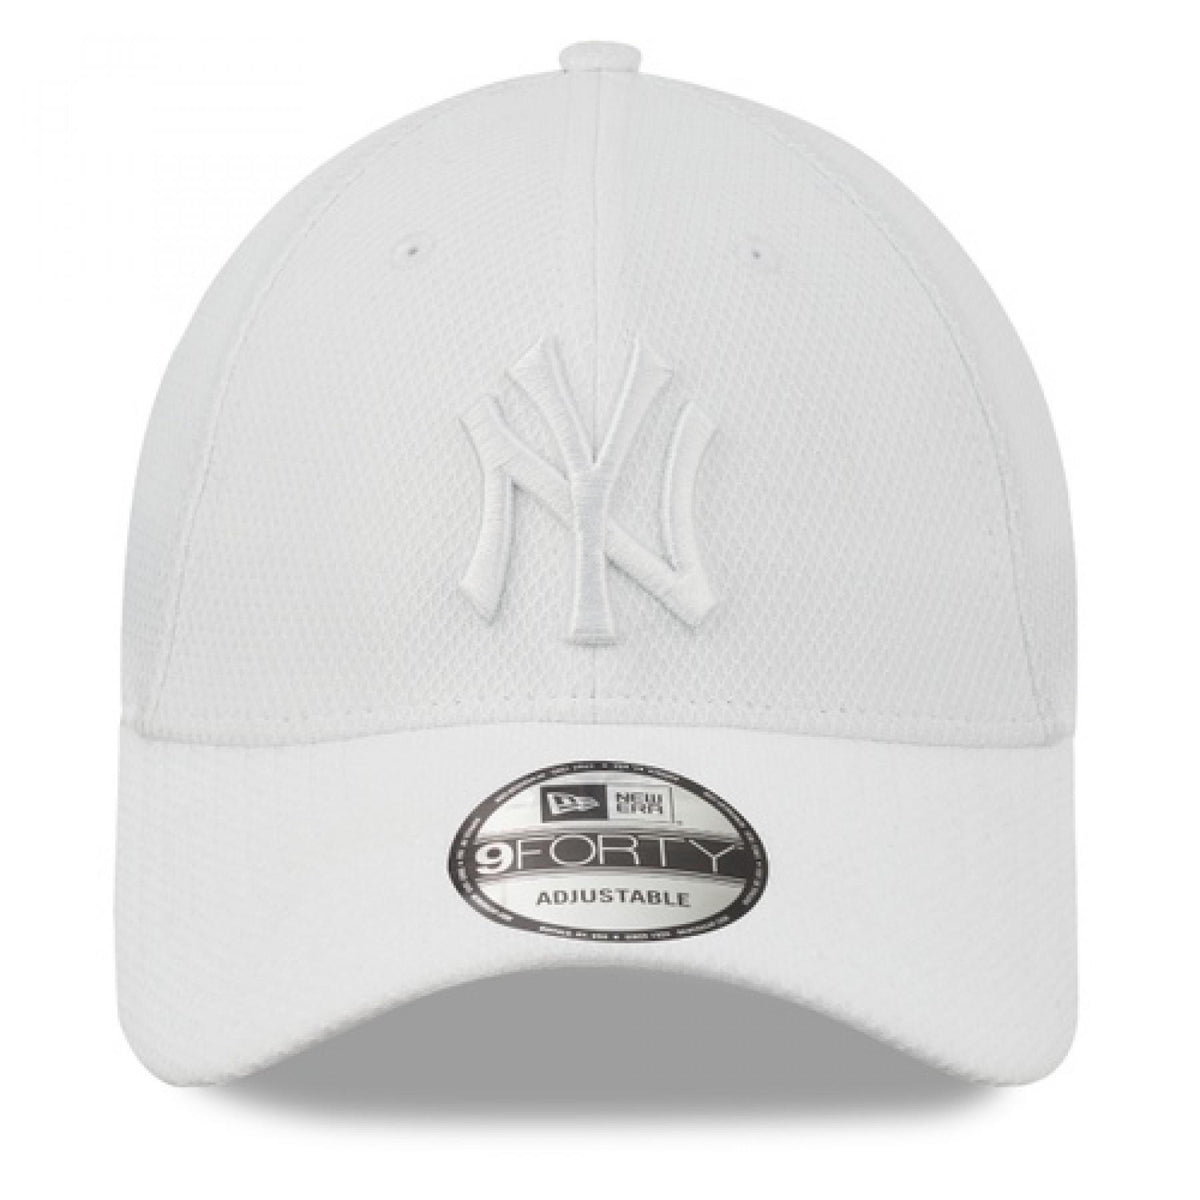 New York Yankees Diamond Era White 9FORTY